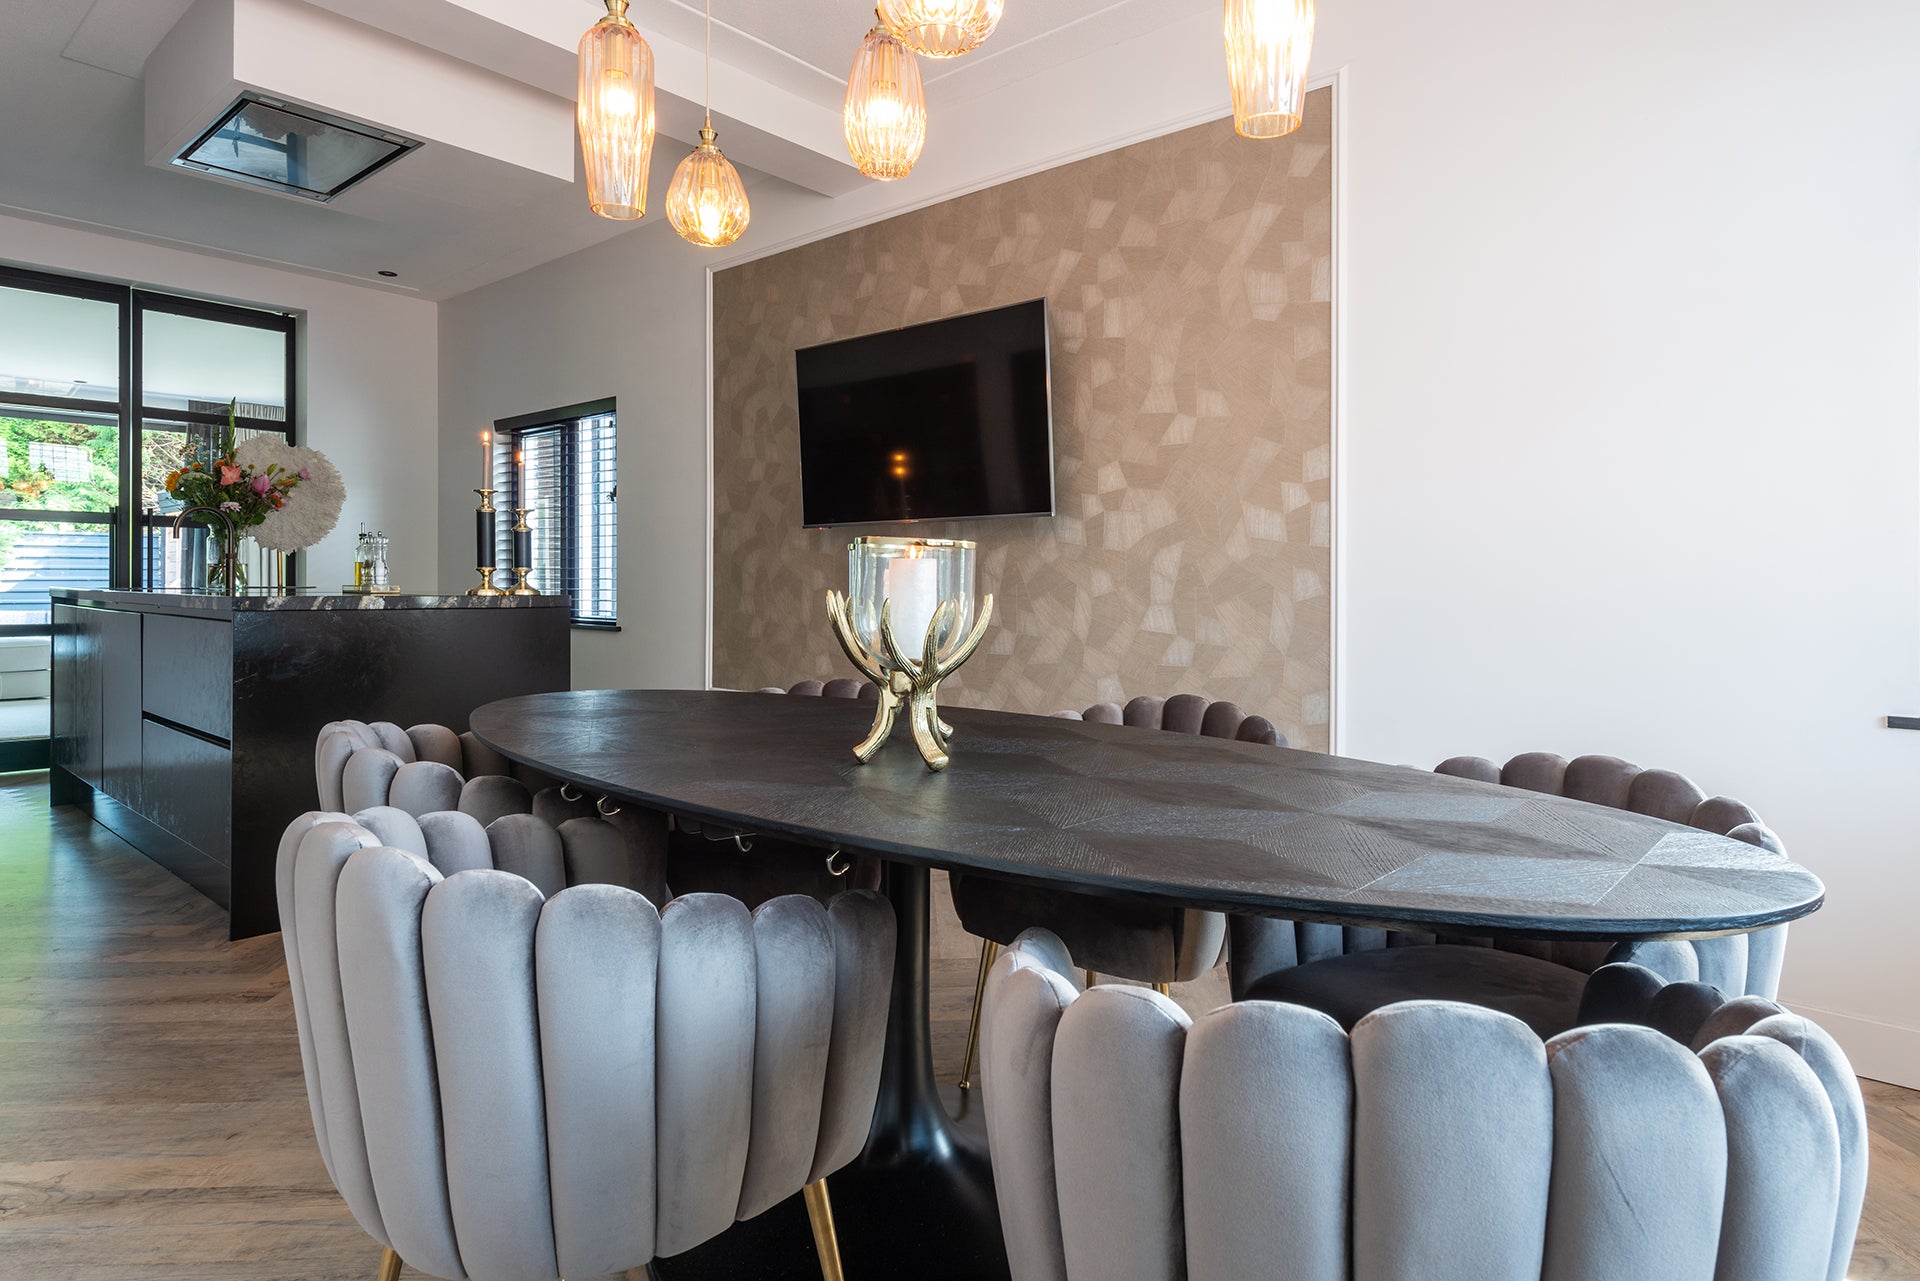 Entdecken Sie den eleganten Blax Oval Dining Table 230